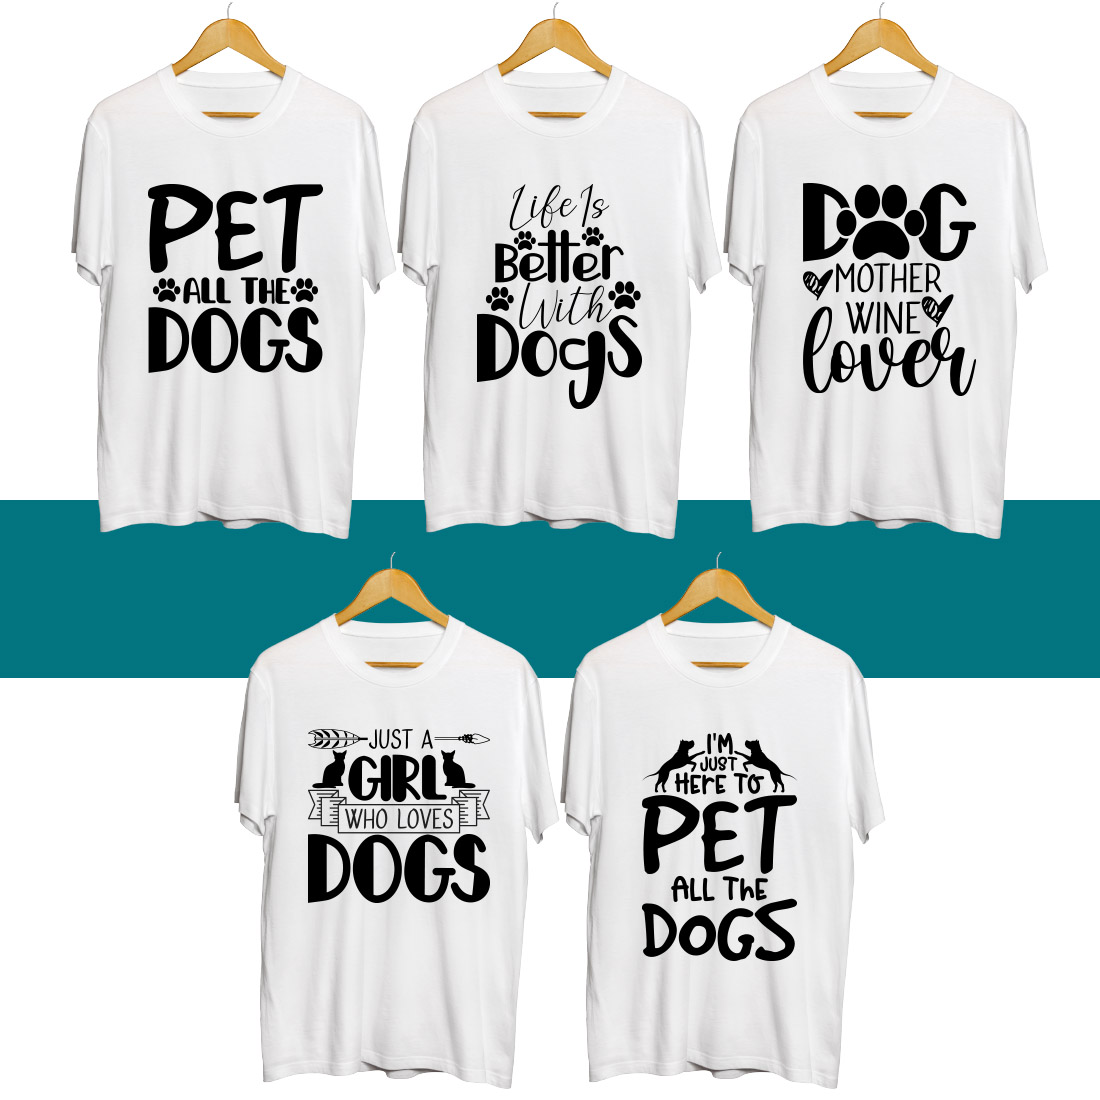 Dog SVG T Shirt Designs Bundle cover image.